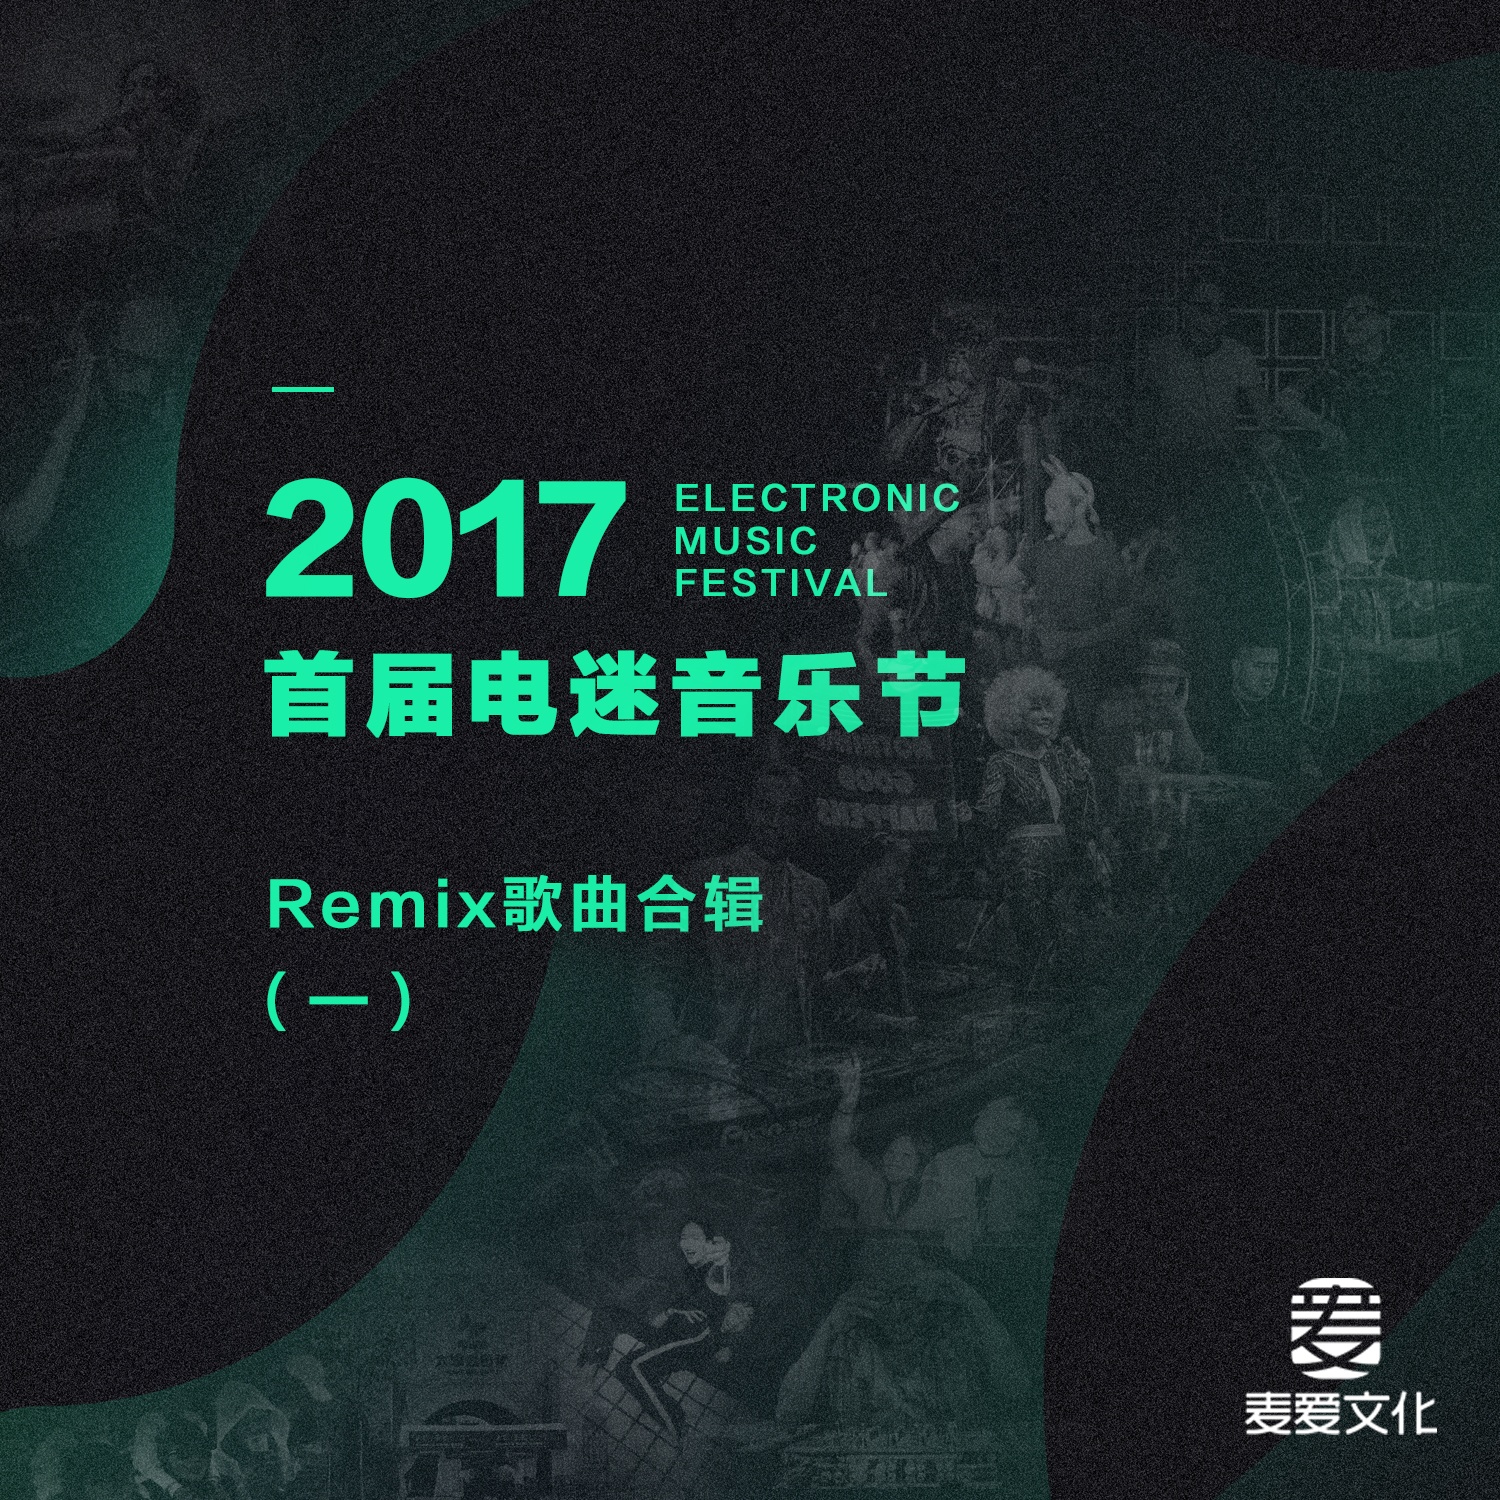 2017 shou jie dian mi yin yue jie Remix ge qu he ji yi